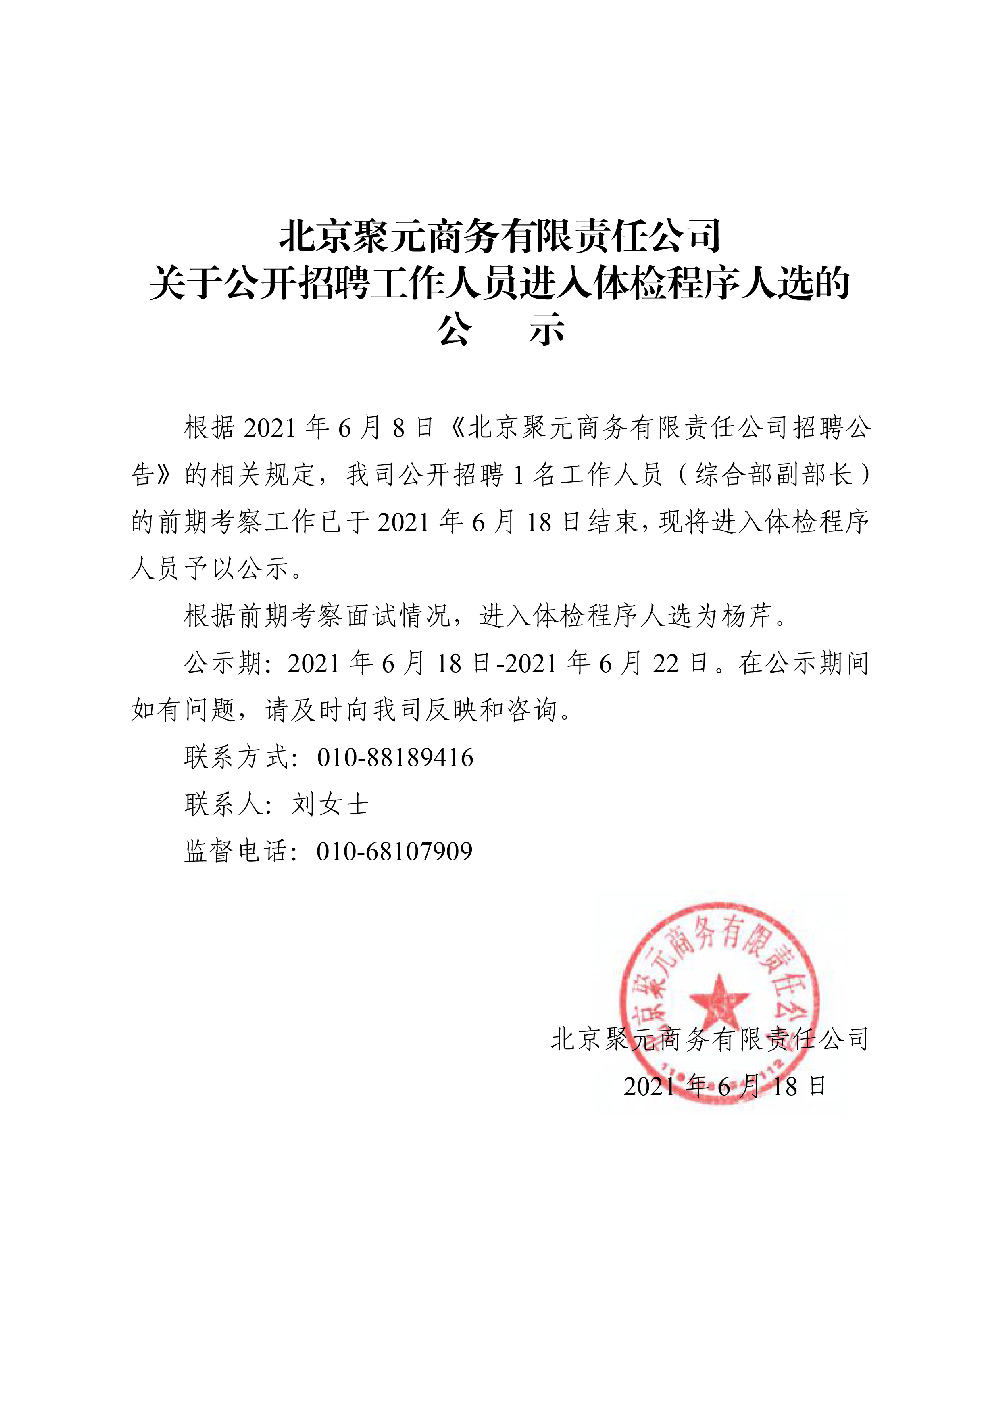 北京聚元商務有限責任公司關于公開招聘工作人員進人體檢程序人選的公示